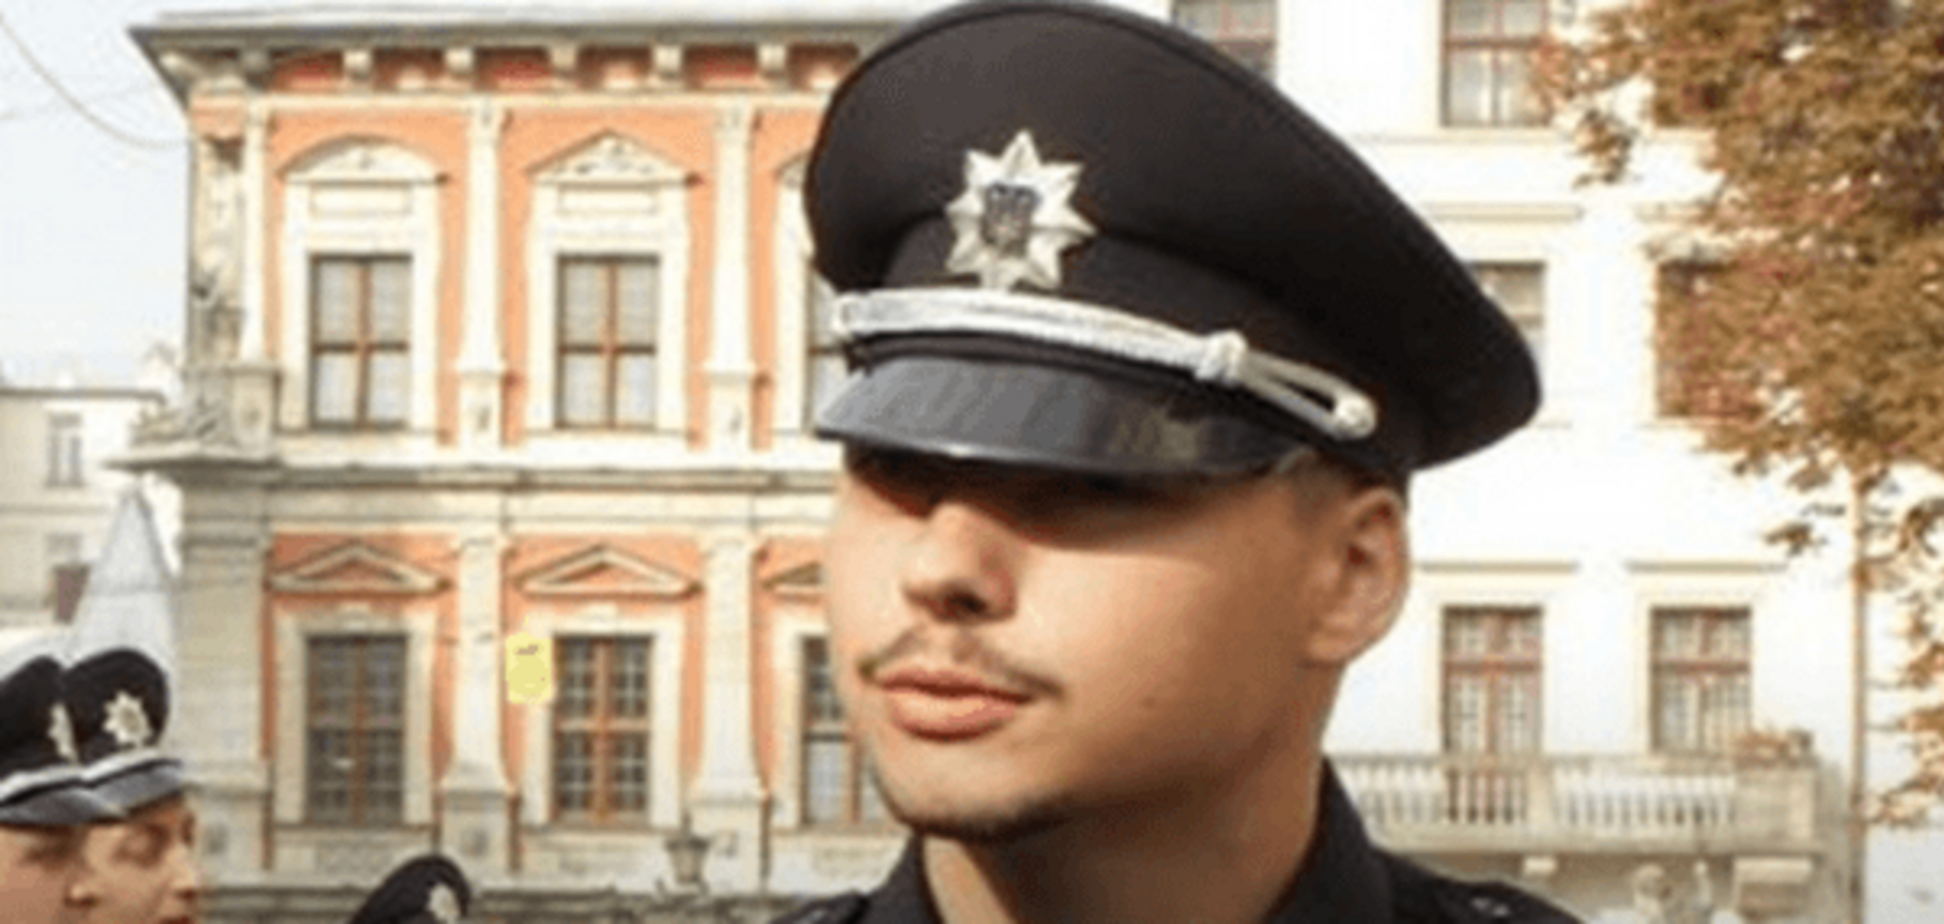 Остання крадіжка - це я погарячкував: глава поліції Львова зробив роботу над помилками